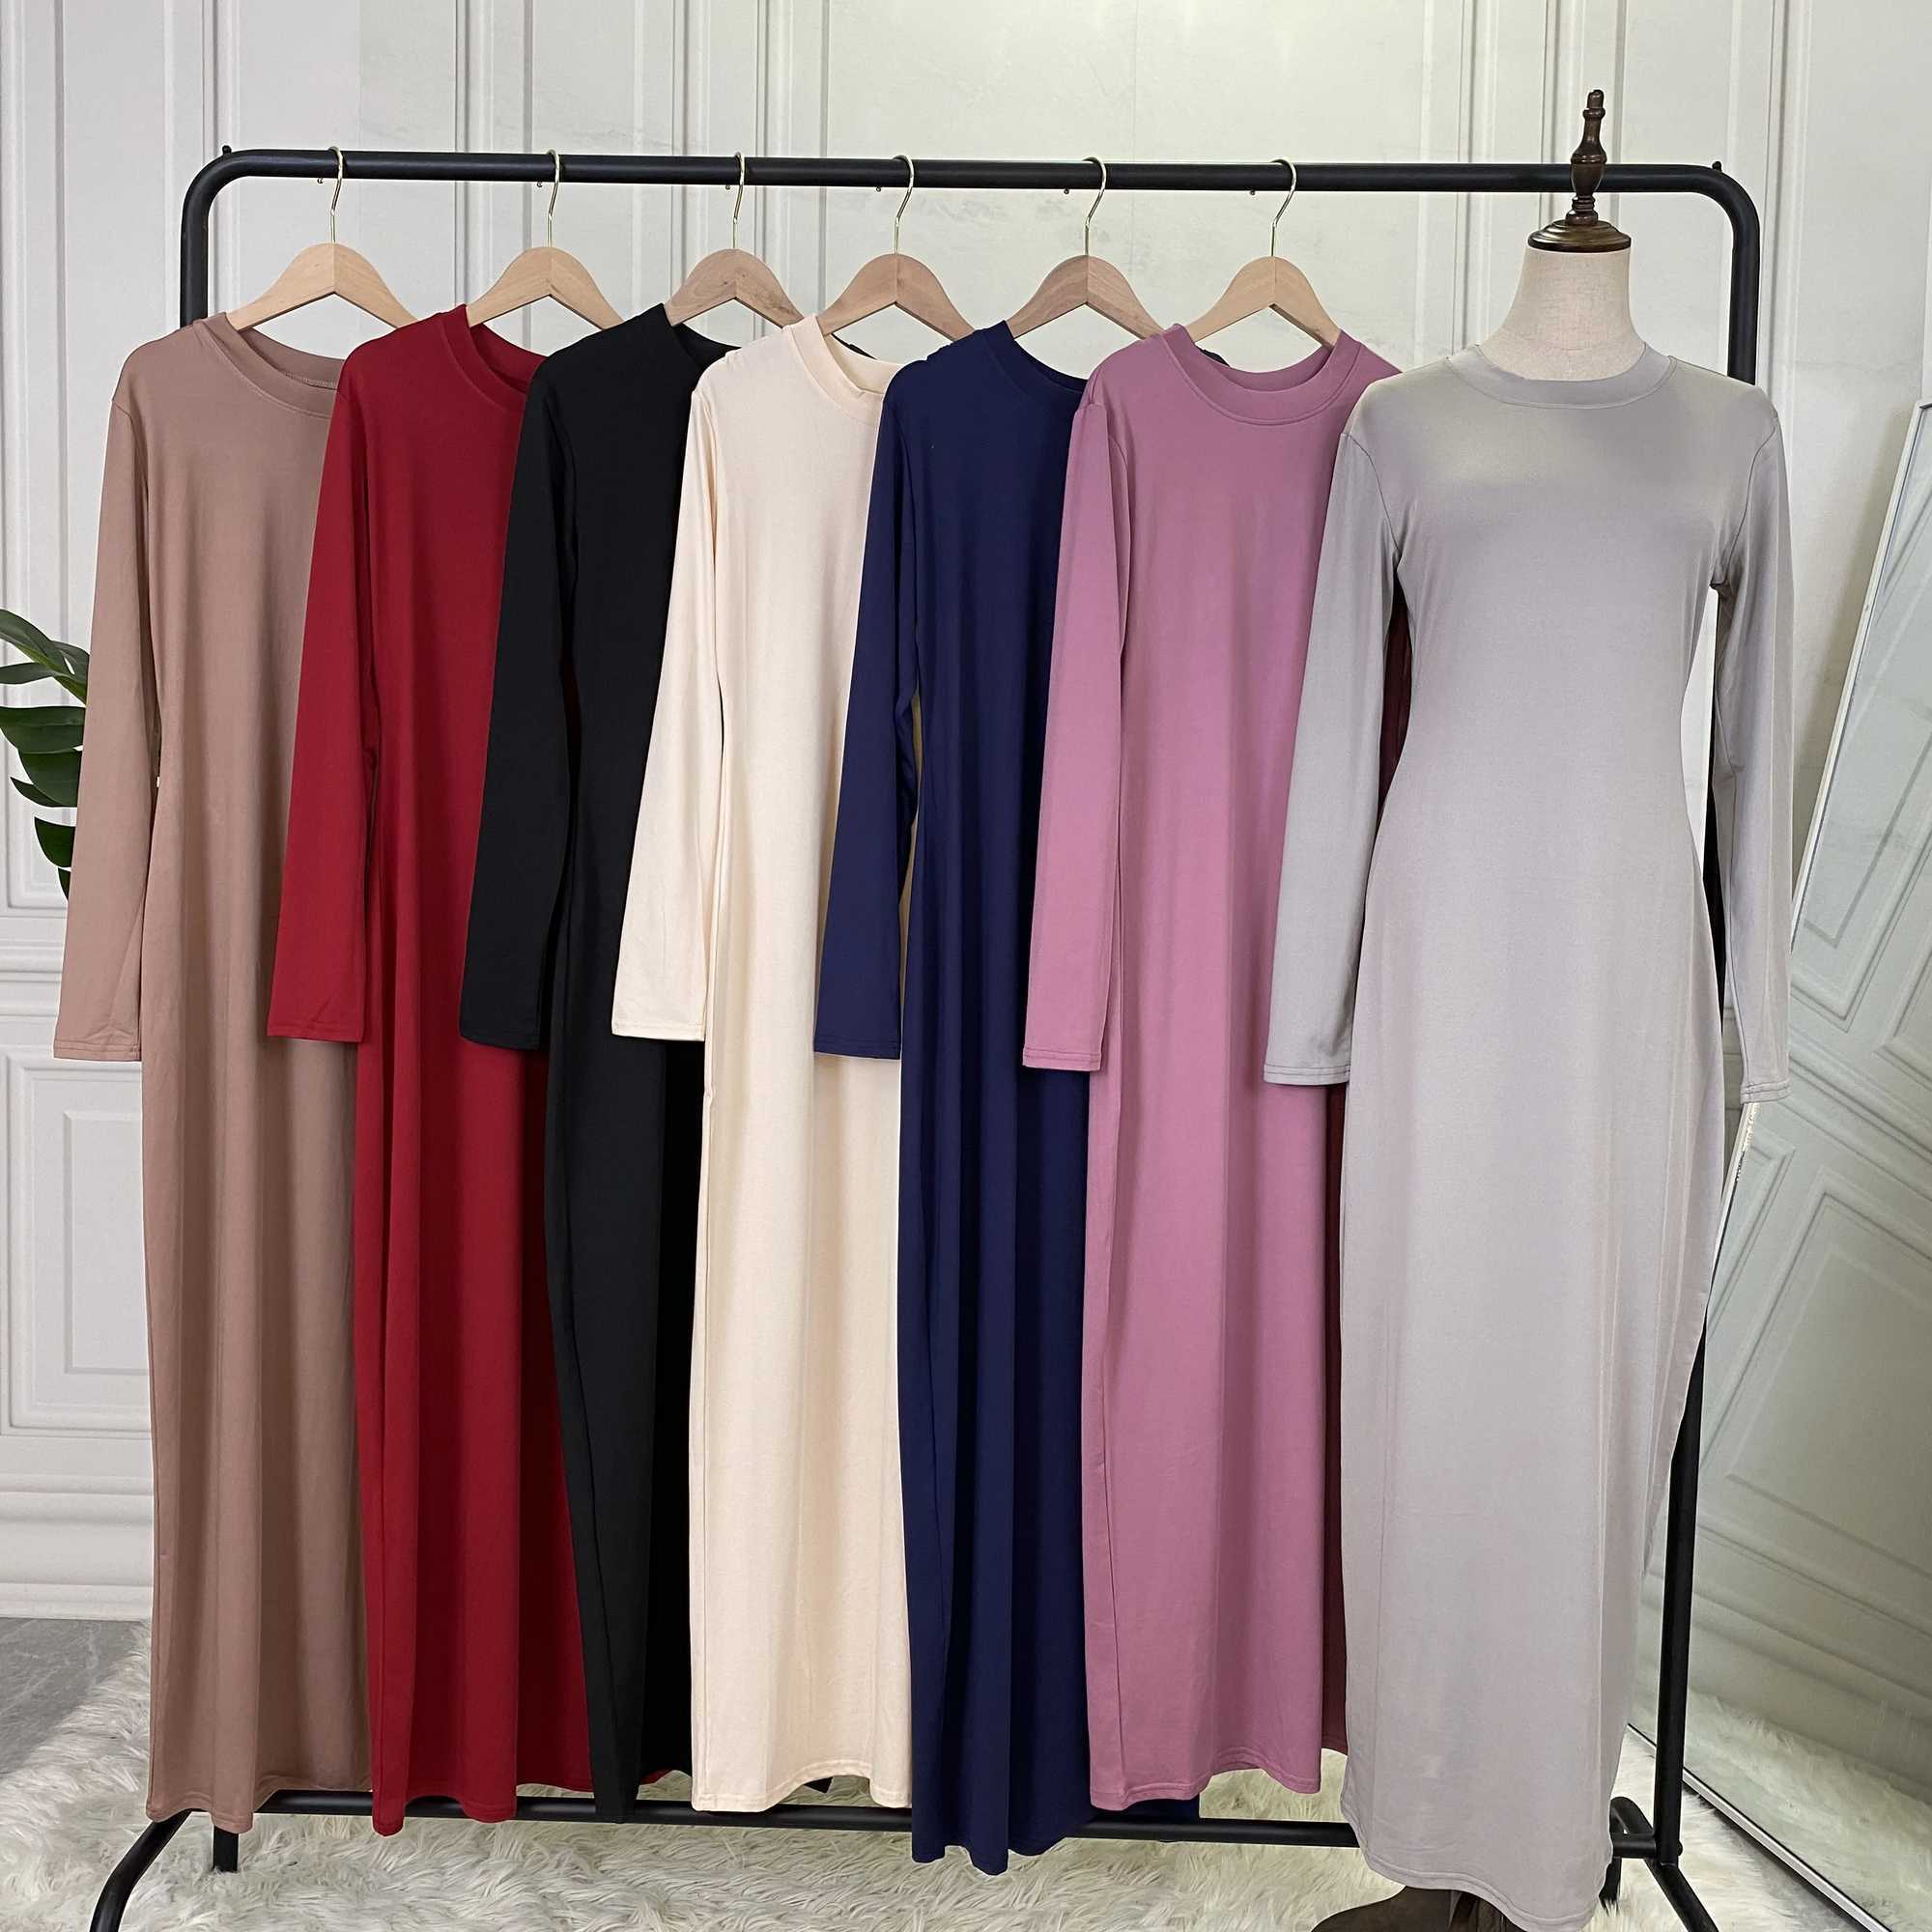 Ethnic Clothing Summer Skirt For Ladies New Inner Dress Muslim Casual Dress For Women Clothing Islamic Abaya Long Sleeve Maxi Slim Inner Dress d240419